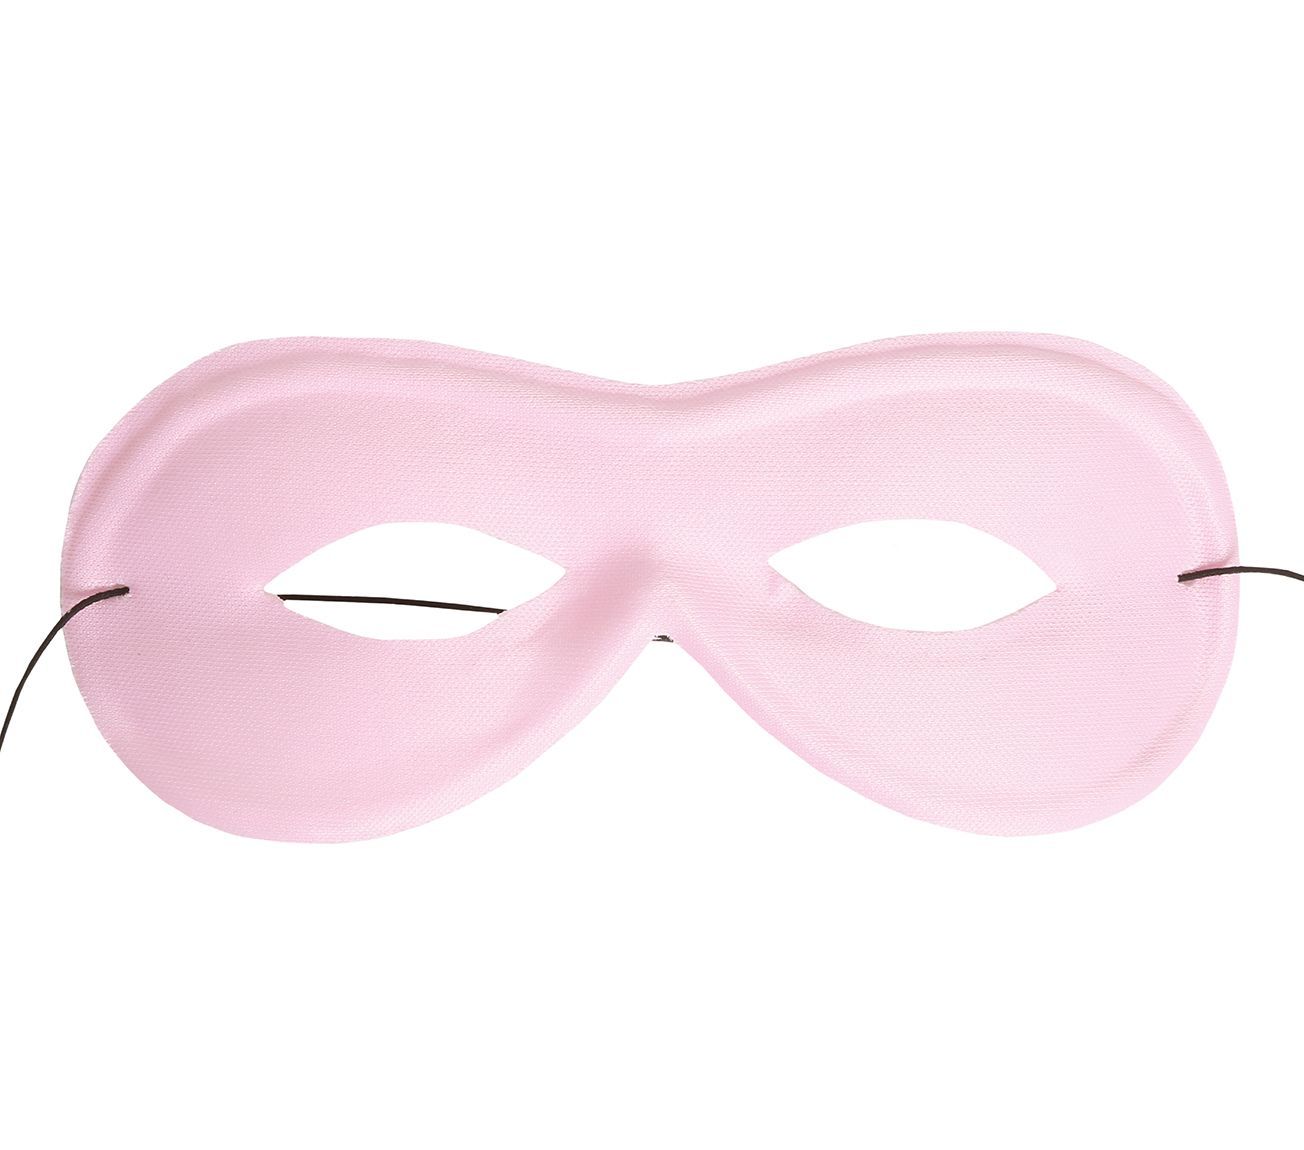 Basic oogmasker roze